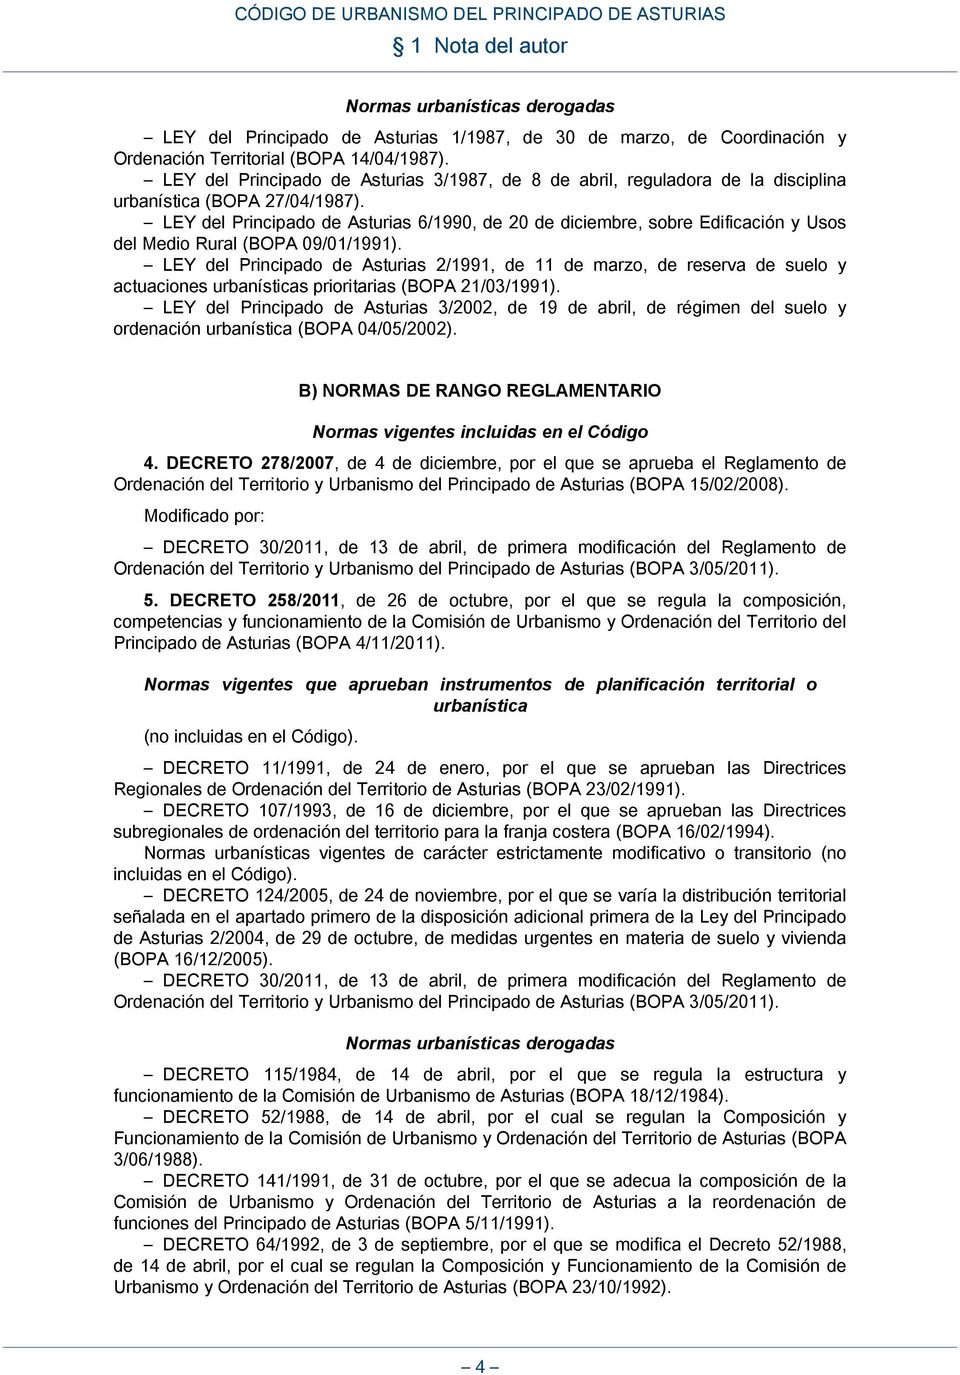 LEY del Principado de Asturias 6/1990, de 20 de diciembre, sobre Edificación y Usos del Medio Rural (BOPA 09/01/1991).